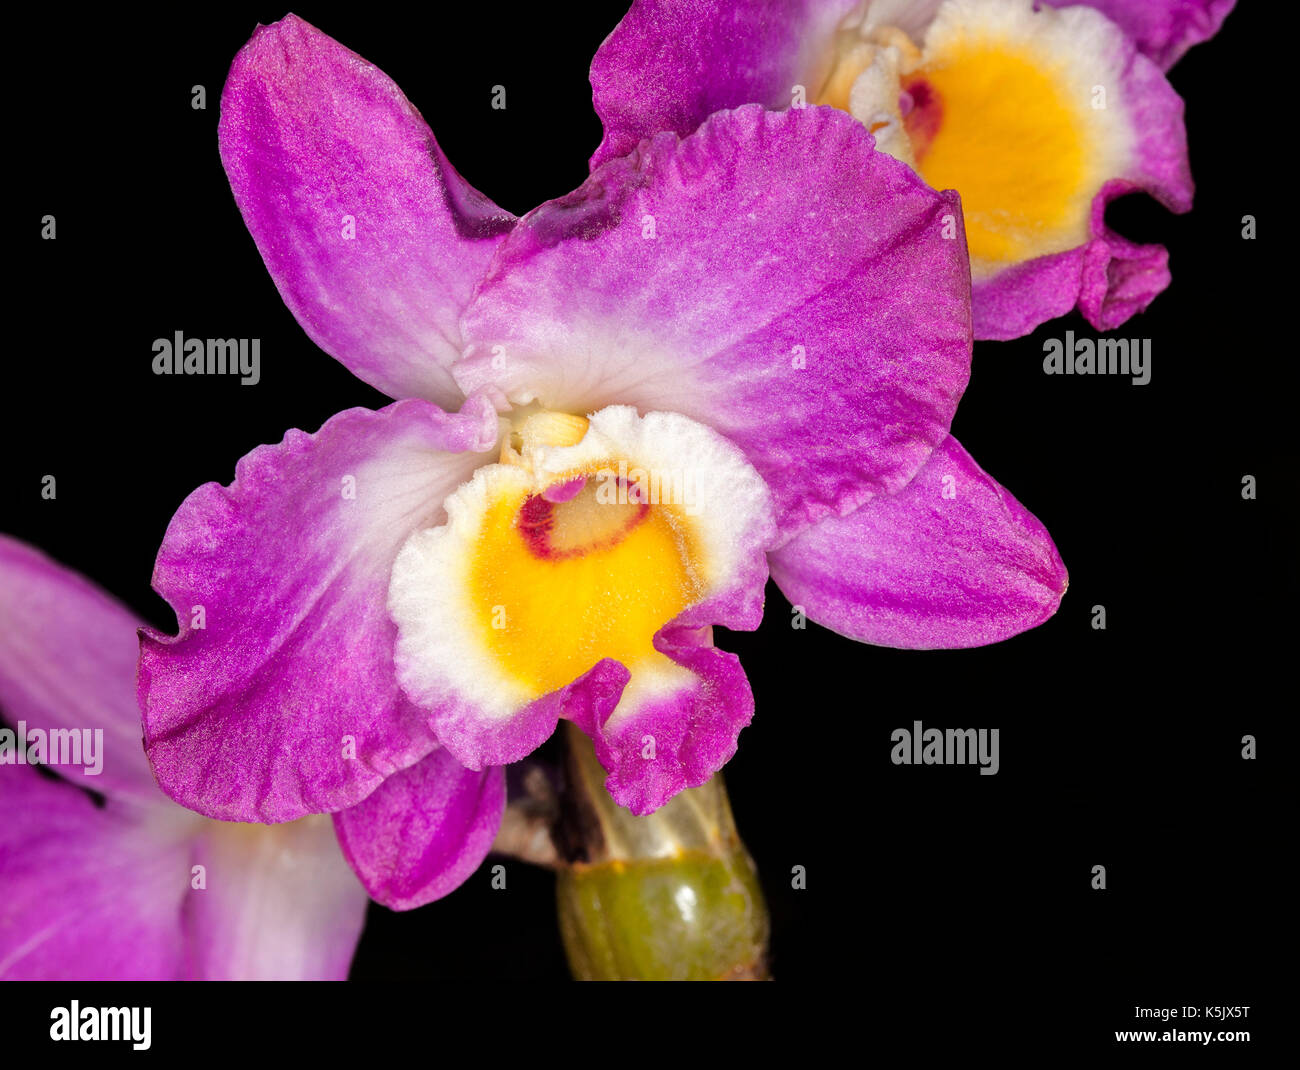 Herrliche Blüte der Orchidee, Dendrobium elegante Lächeln' Red Crest, mit Vivid Magenta/lila Blütenblätter & Gelb & Weiß auf schwarzem Hintergrund Stockfoto